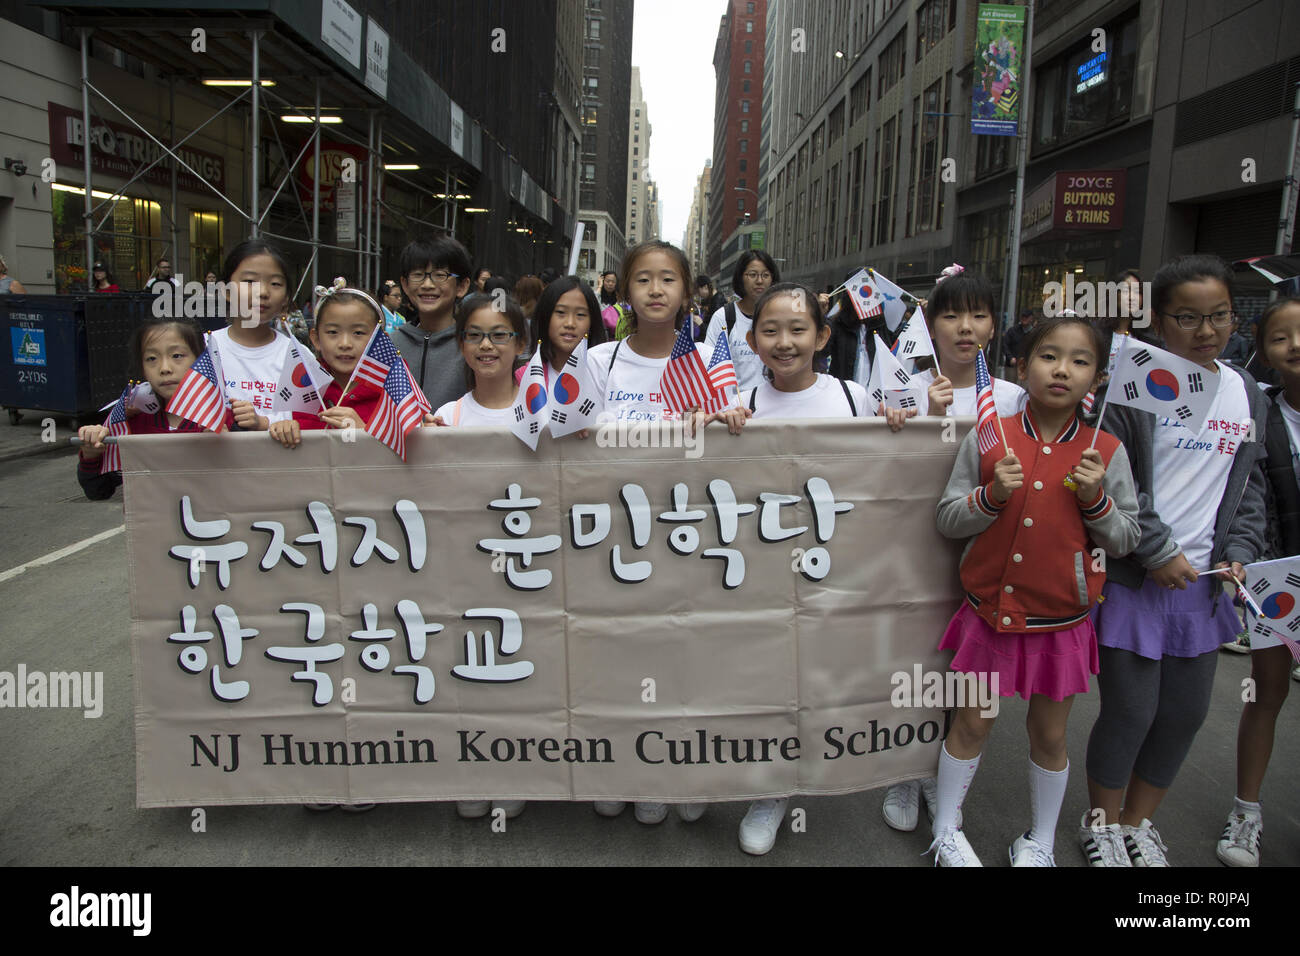 Koreanische Day Parade in New York City geht durch Midtown Manhattan entlang der 6. Avenue in Korea Town an der West 32nd Street. Studierende aus den neuen Jersey Hunmin koreanische Kultur Schule stolz März in die Parade. Stockfoto